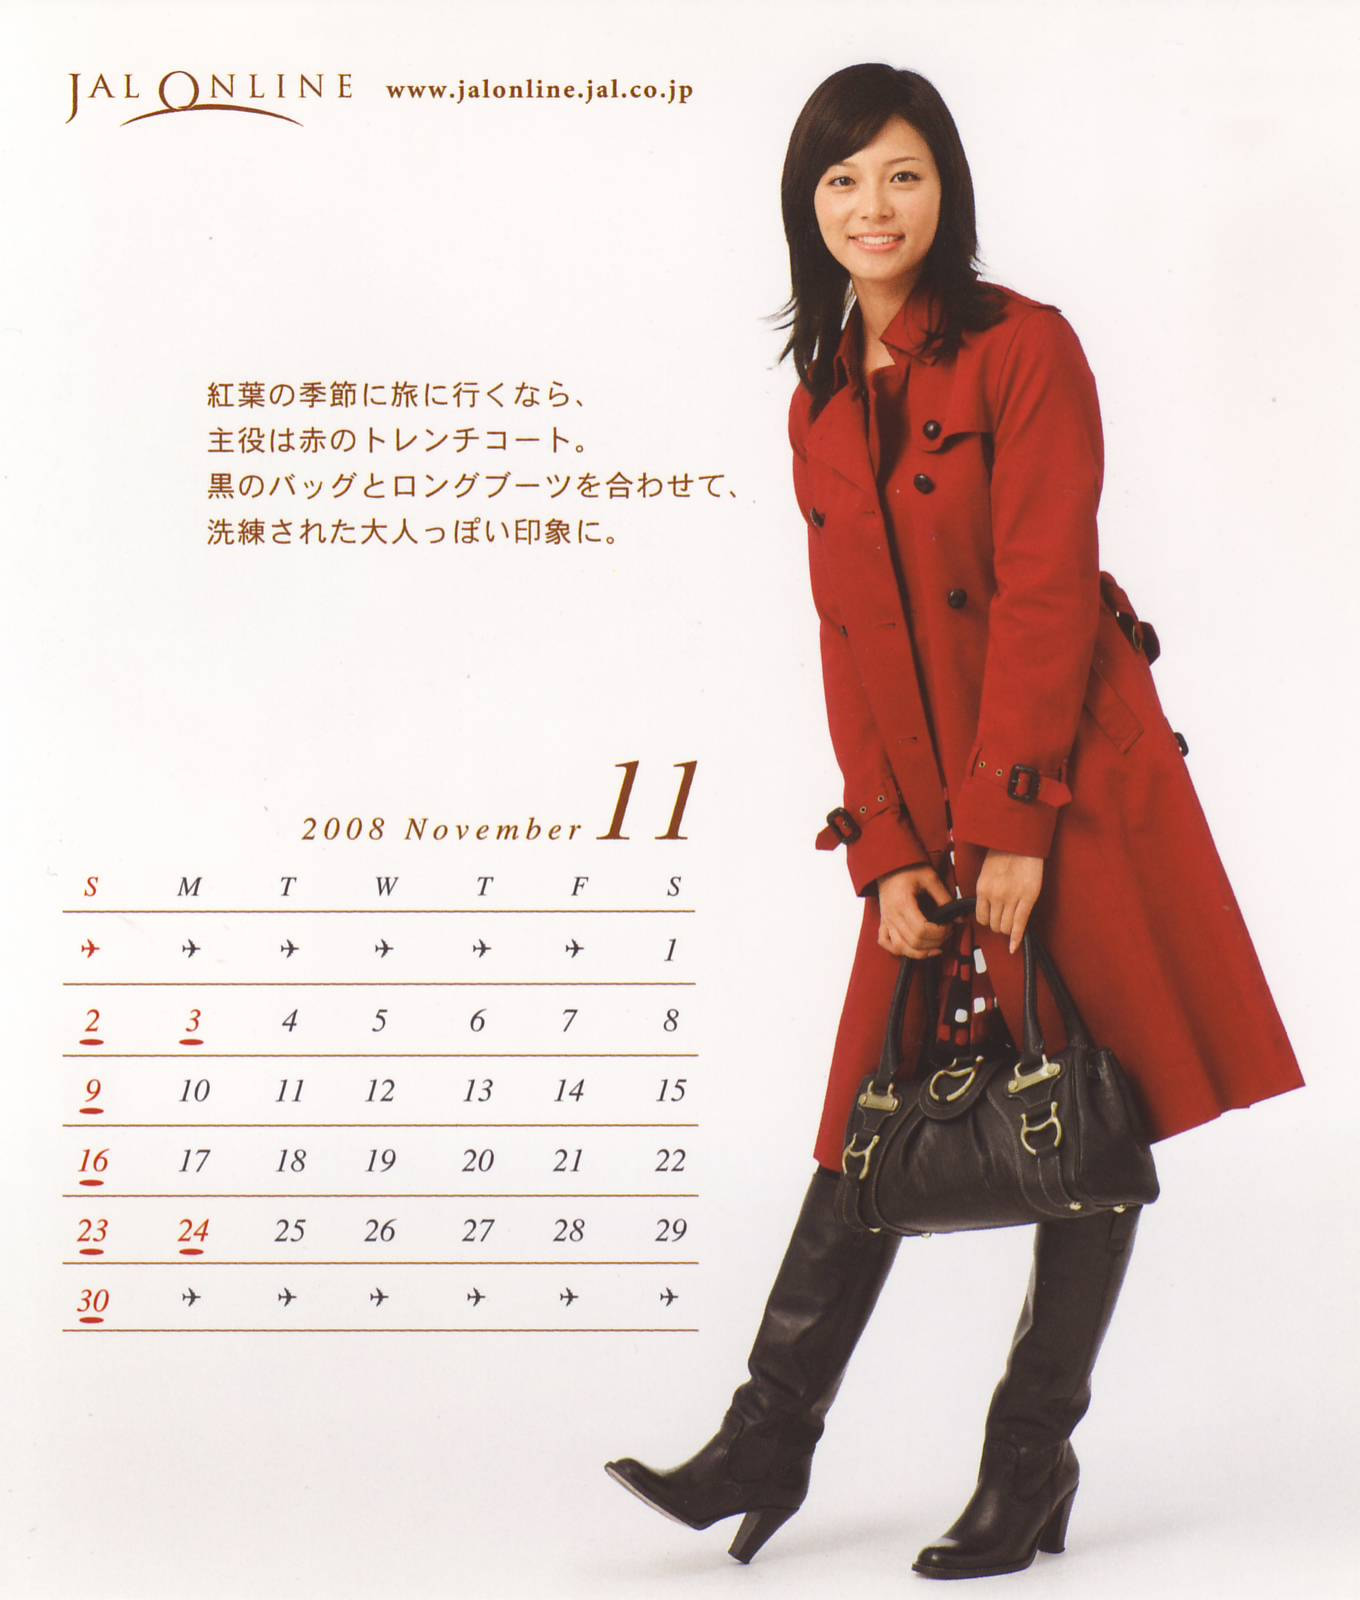 オレ専用ザク 相武紗季のJALONLINE卓上カレンダーの11月